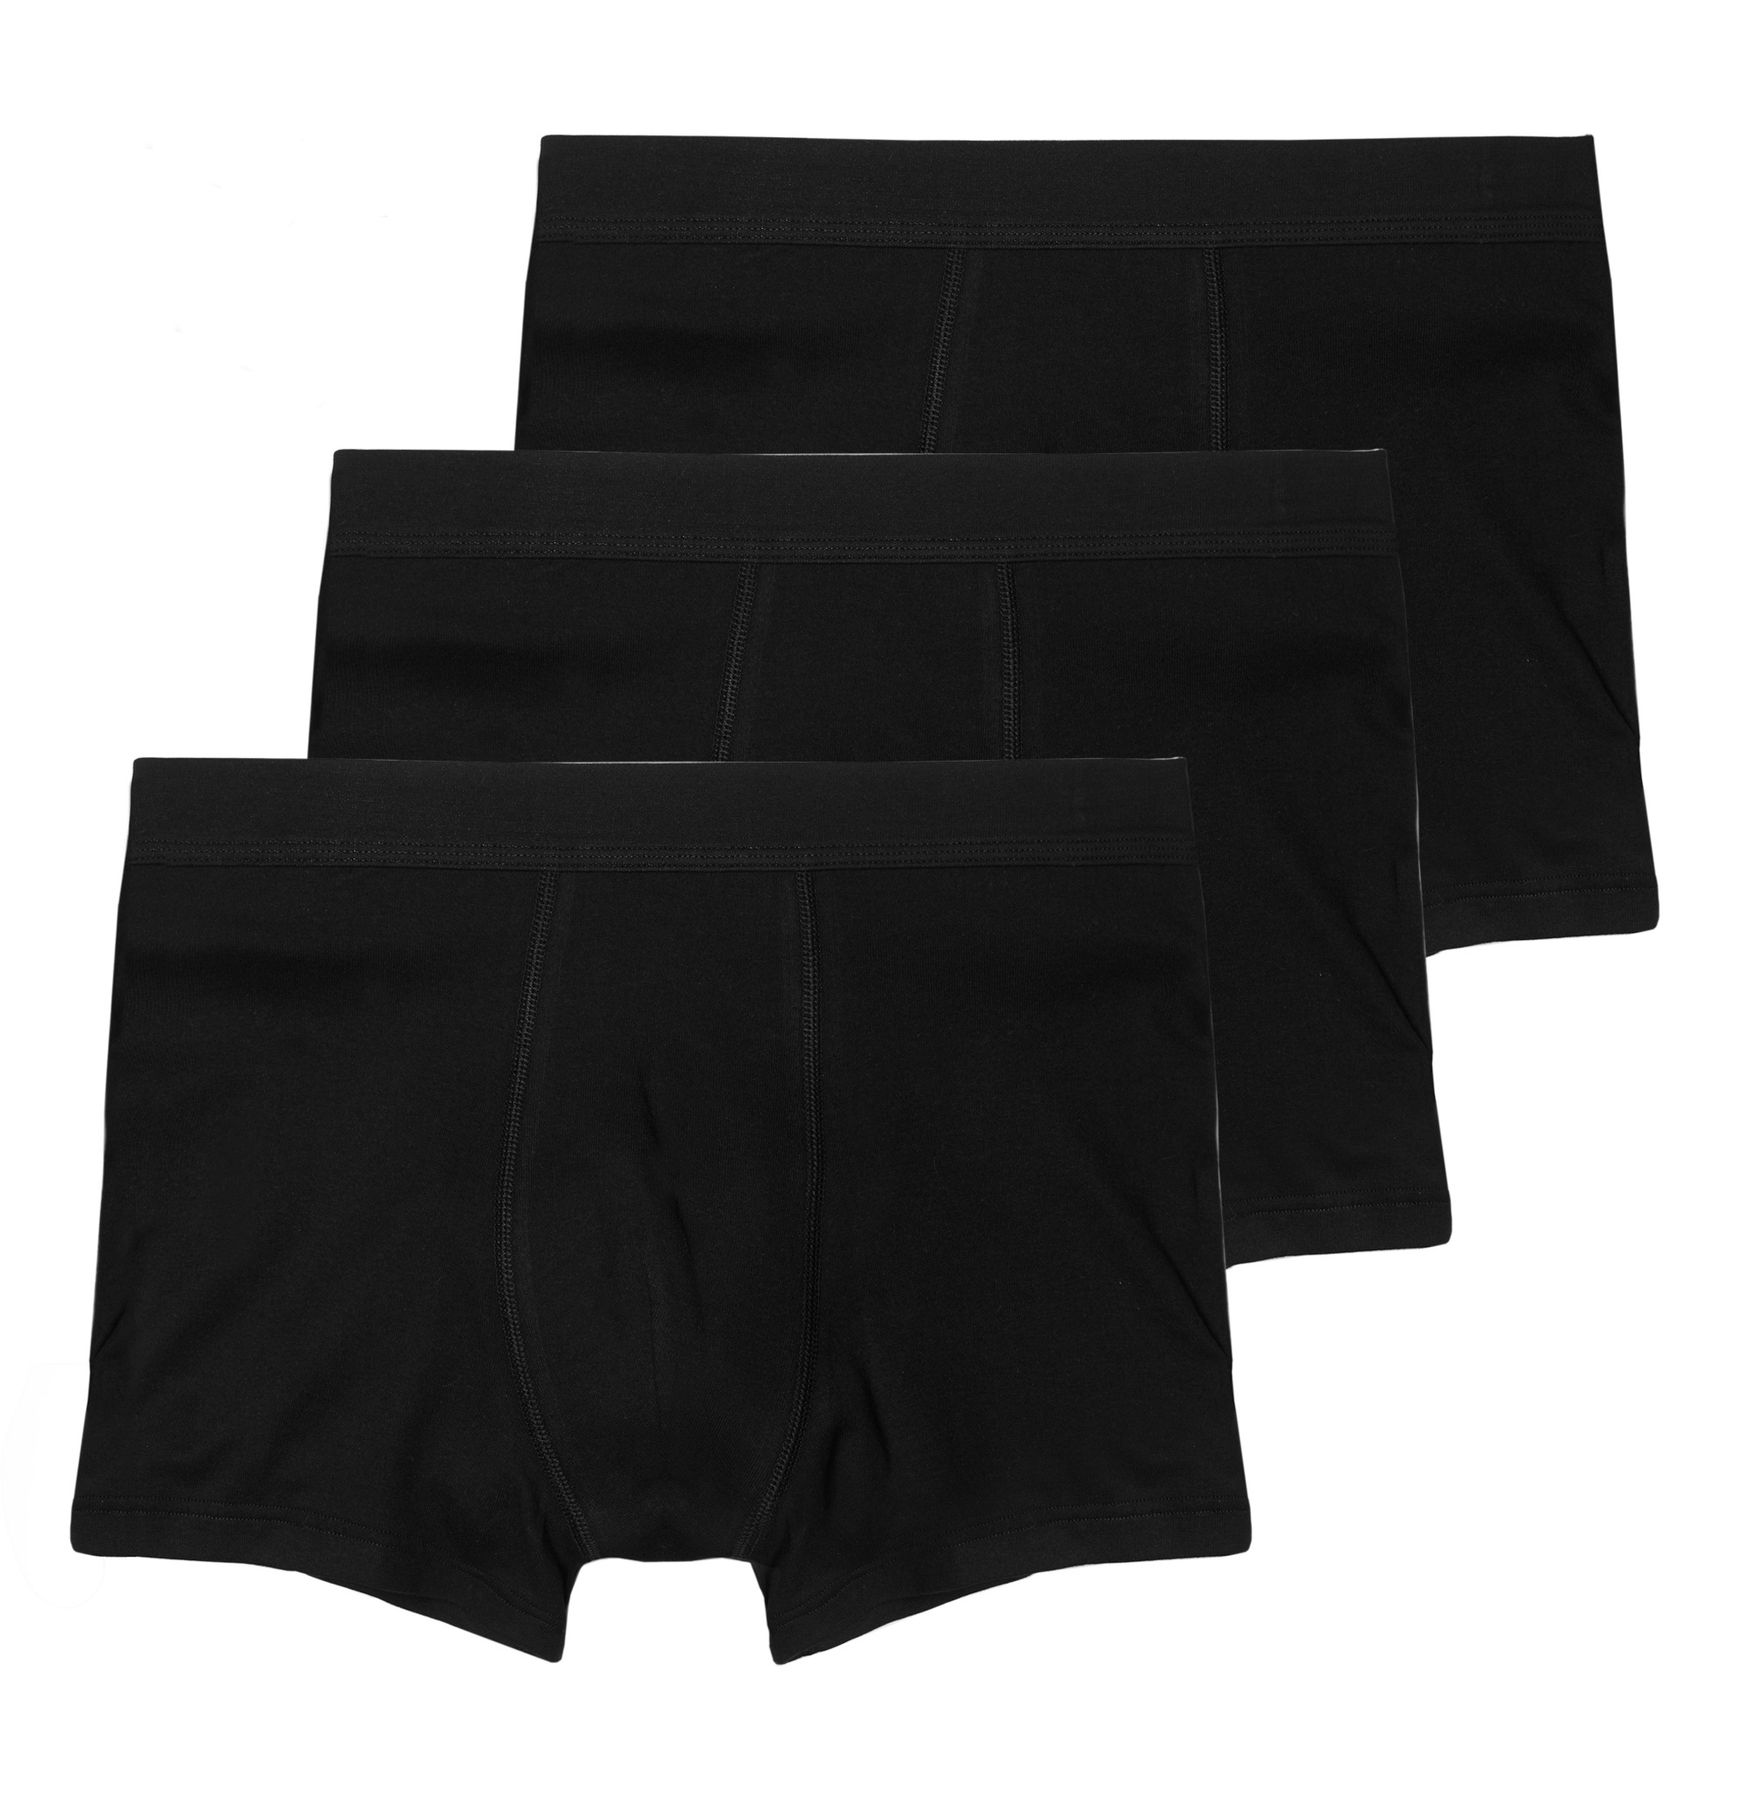 Боксеры Haasis Bodywear 3er-Set: Pants, черный фото